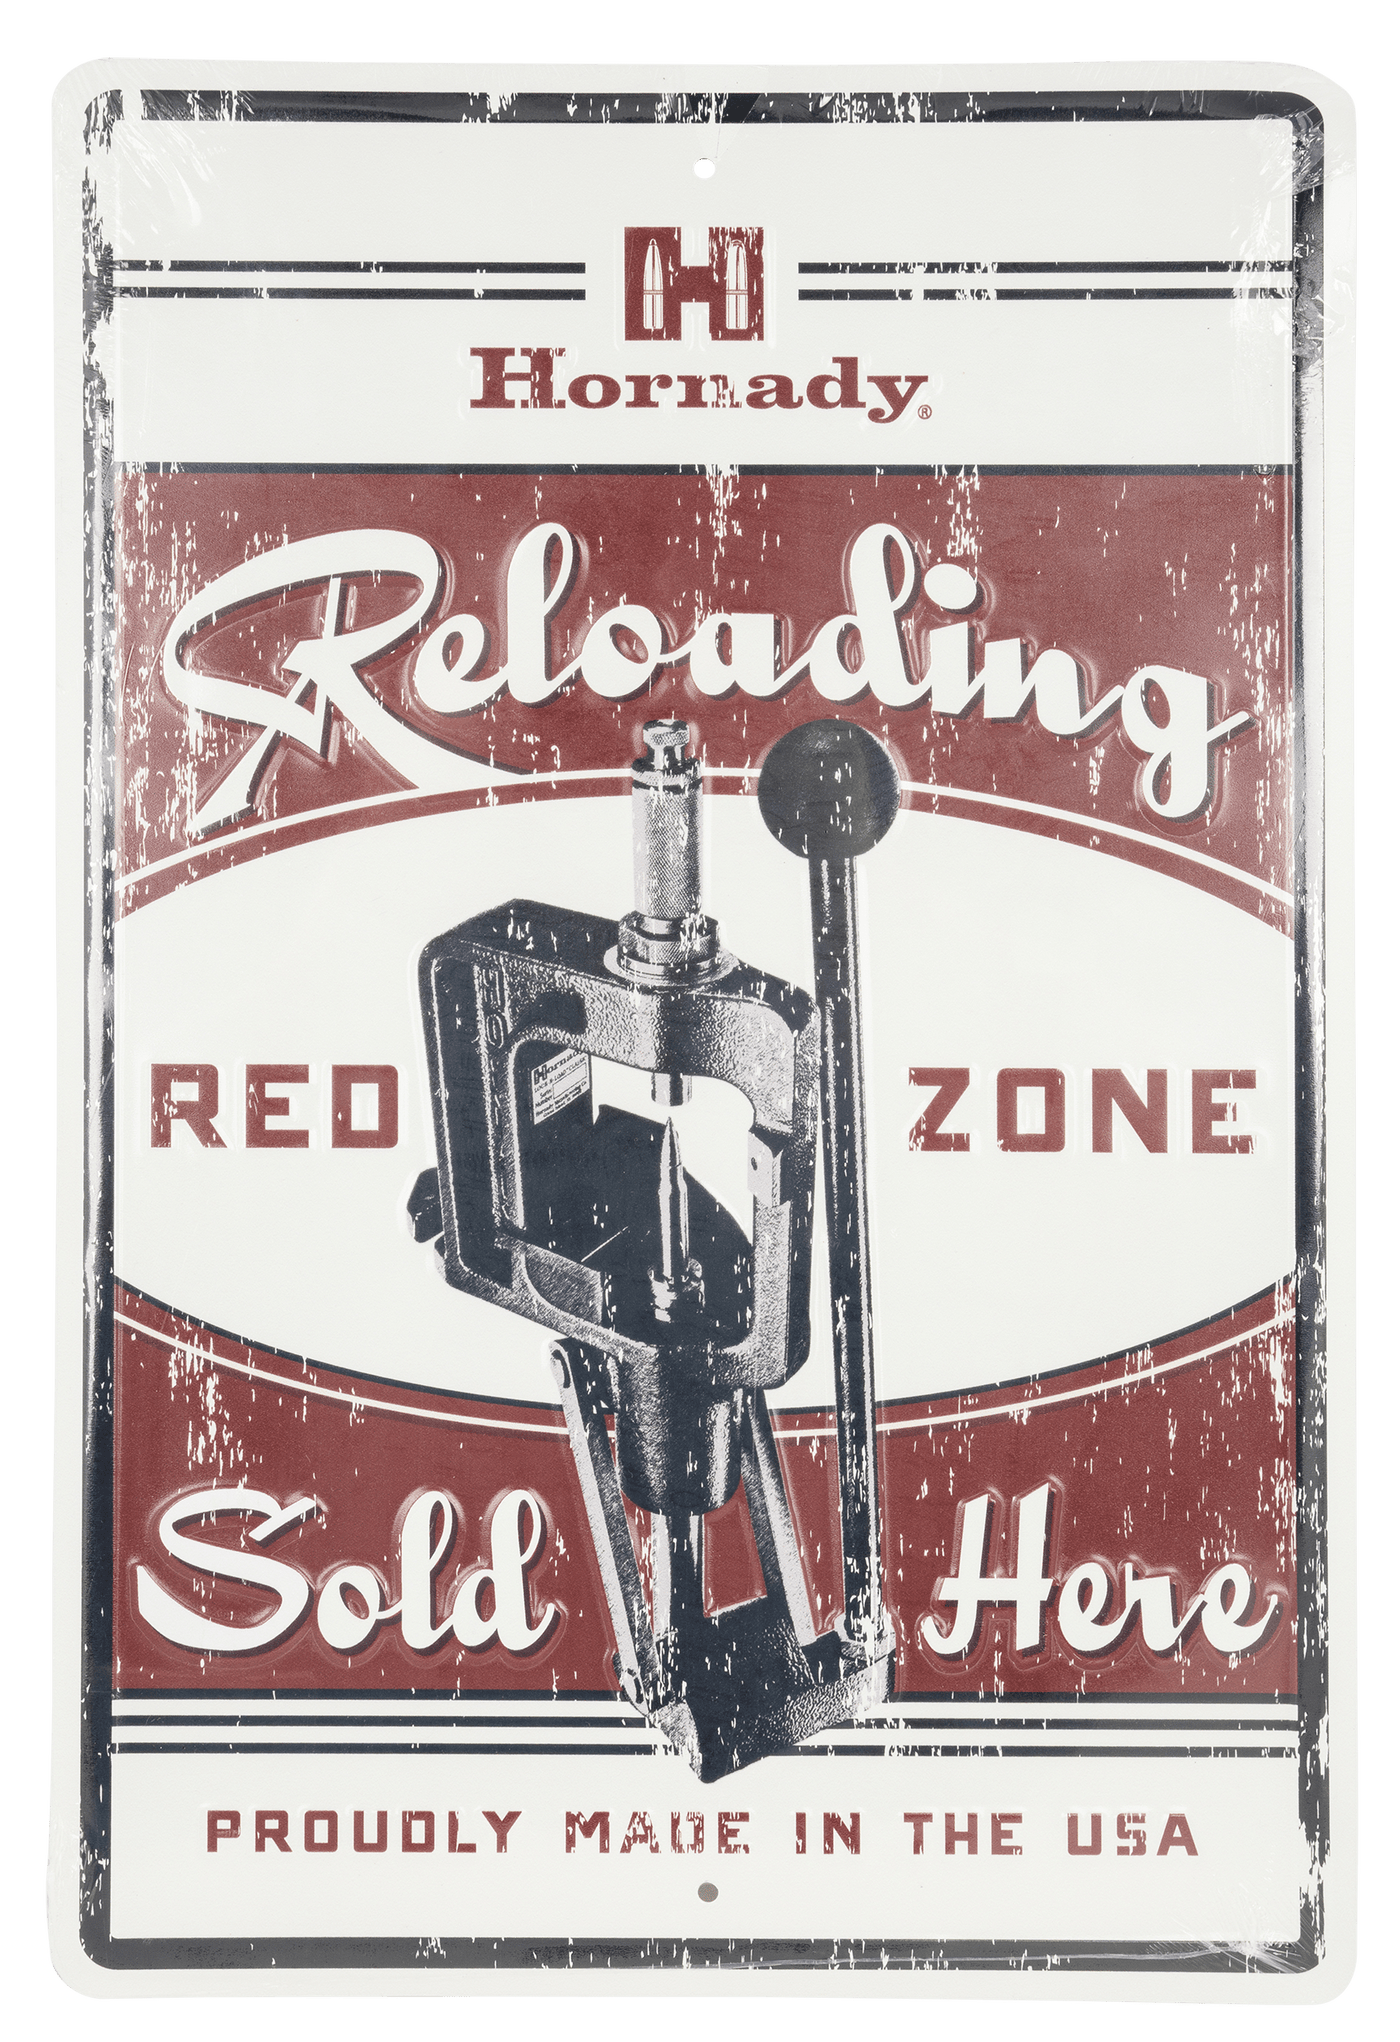 Hornady Hornady , Horn 99130   Hornady Reloading Redzone Tin Sign Accessories